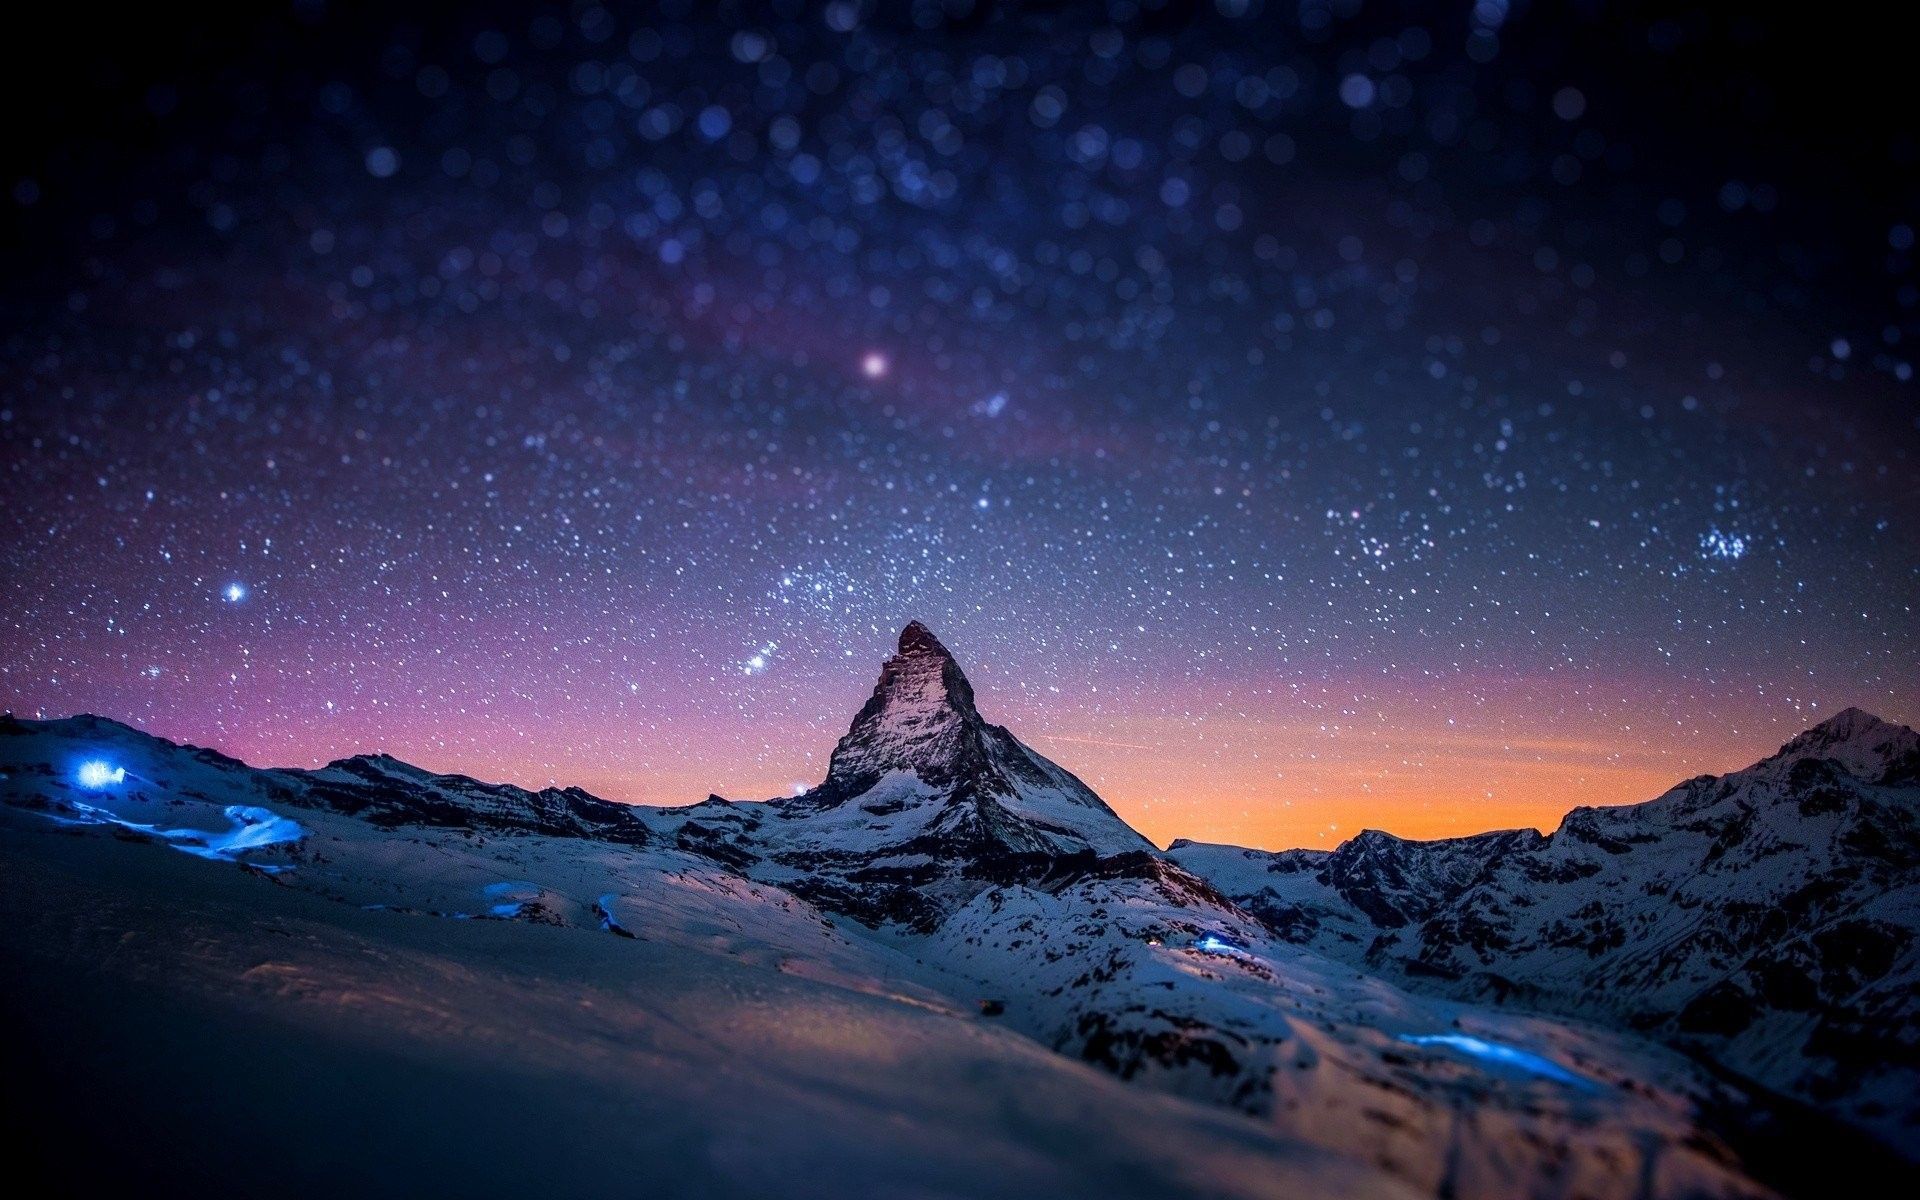  Das Schönste Der Welt Hintergrundbild 1920x1200. large Weltraum Hintergrundbilder HD 1920x1200 für macbook. Earth picture, Matterhorn mountain, Night sky wallpaper